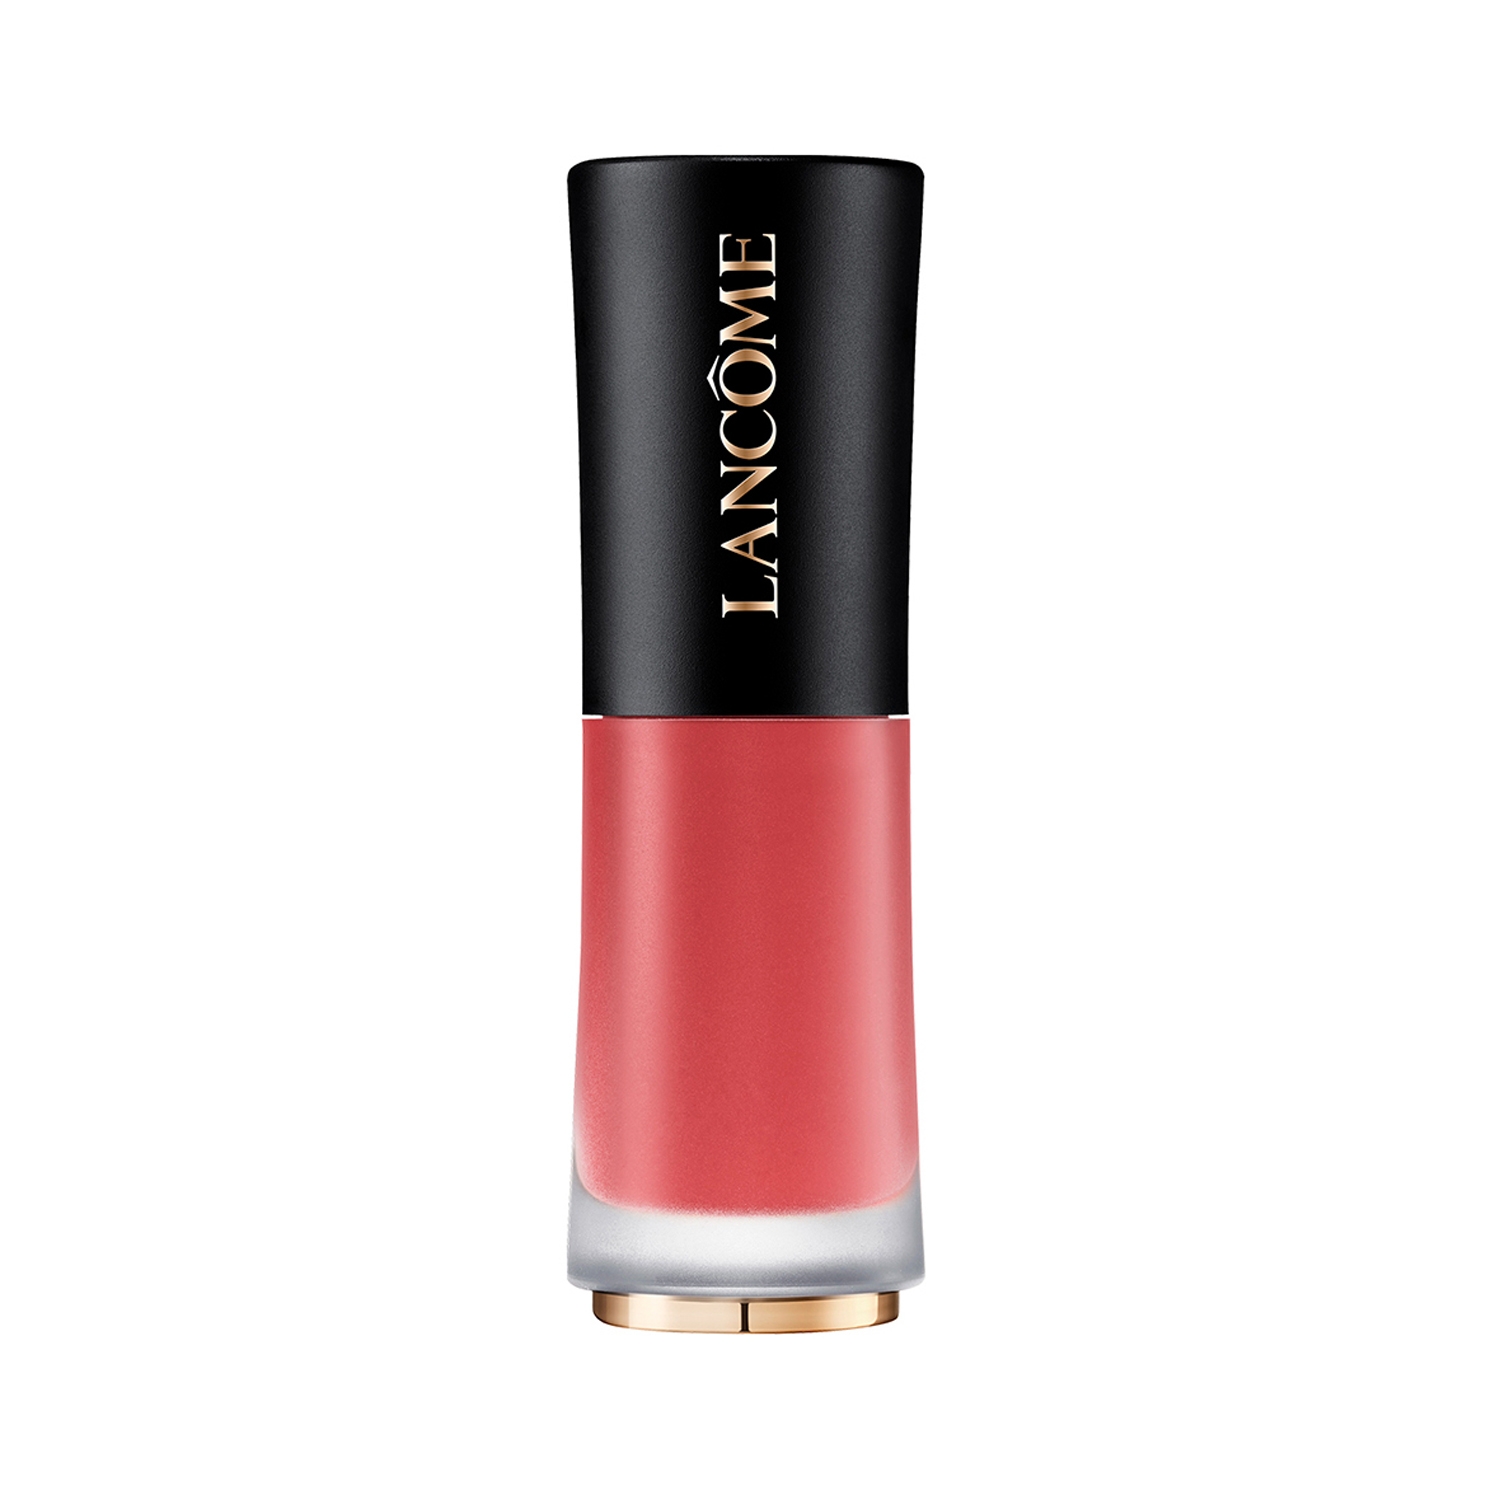 Lancome | Lancome L' Absolu Rouge Drama Ink Liquid Lipstick - 555 Soif De Vivre (6ml)